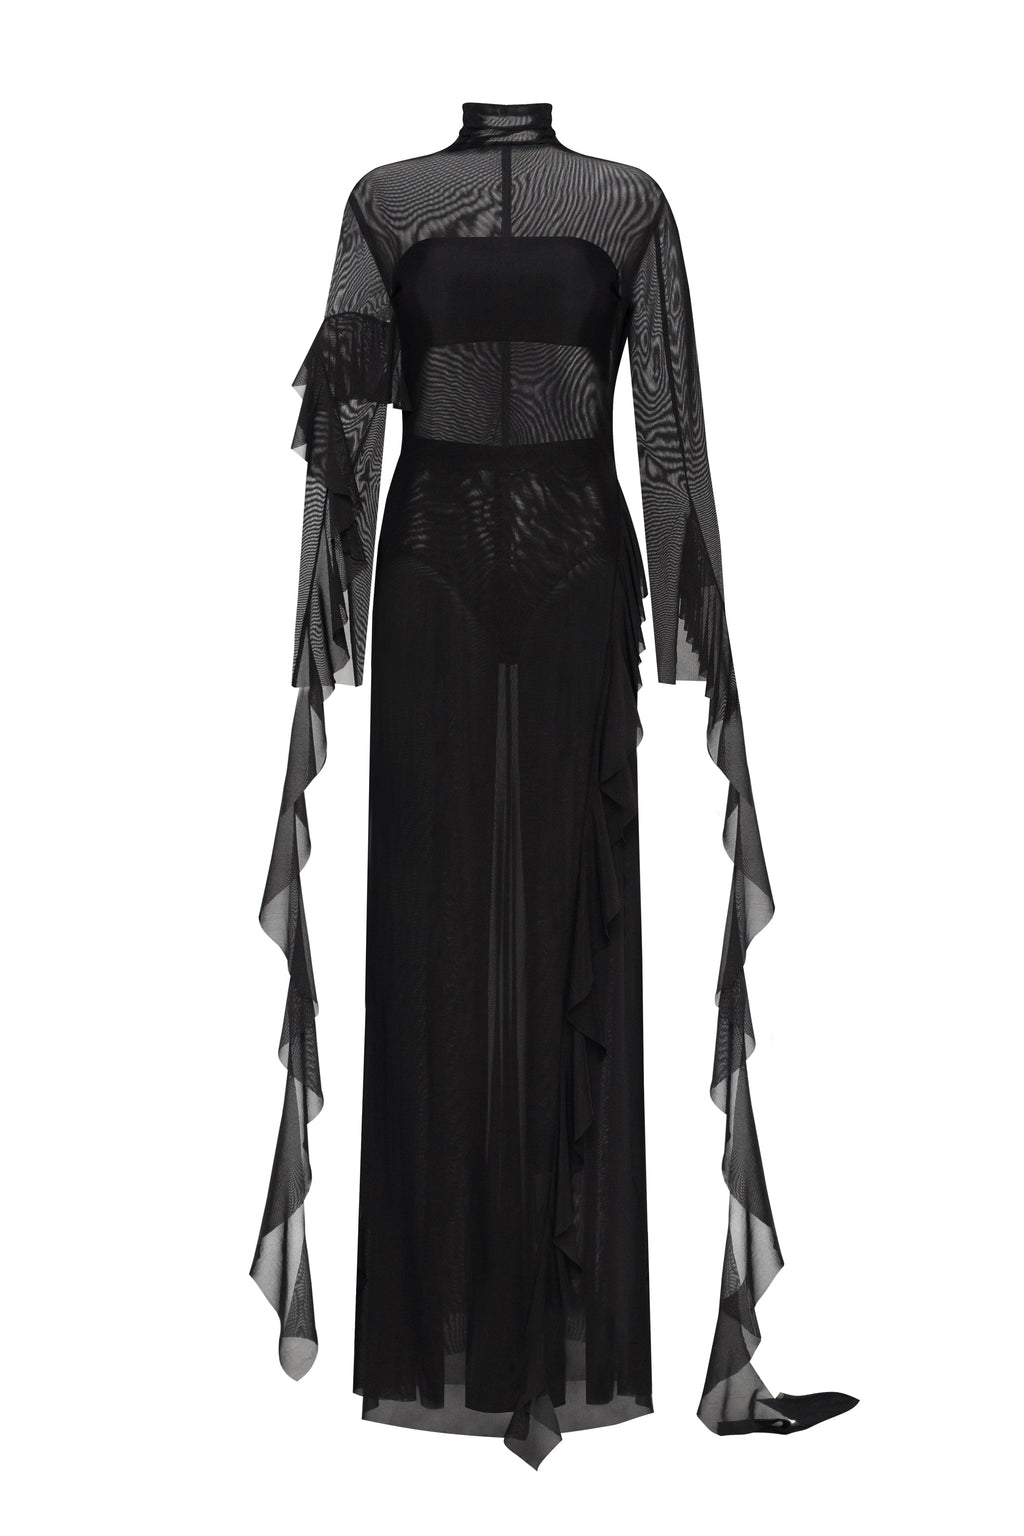 semi-transparent Alluring Dresses mini lace - Xo black, Worldwide delivery Milla Xo USA, ➤➤ in dress